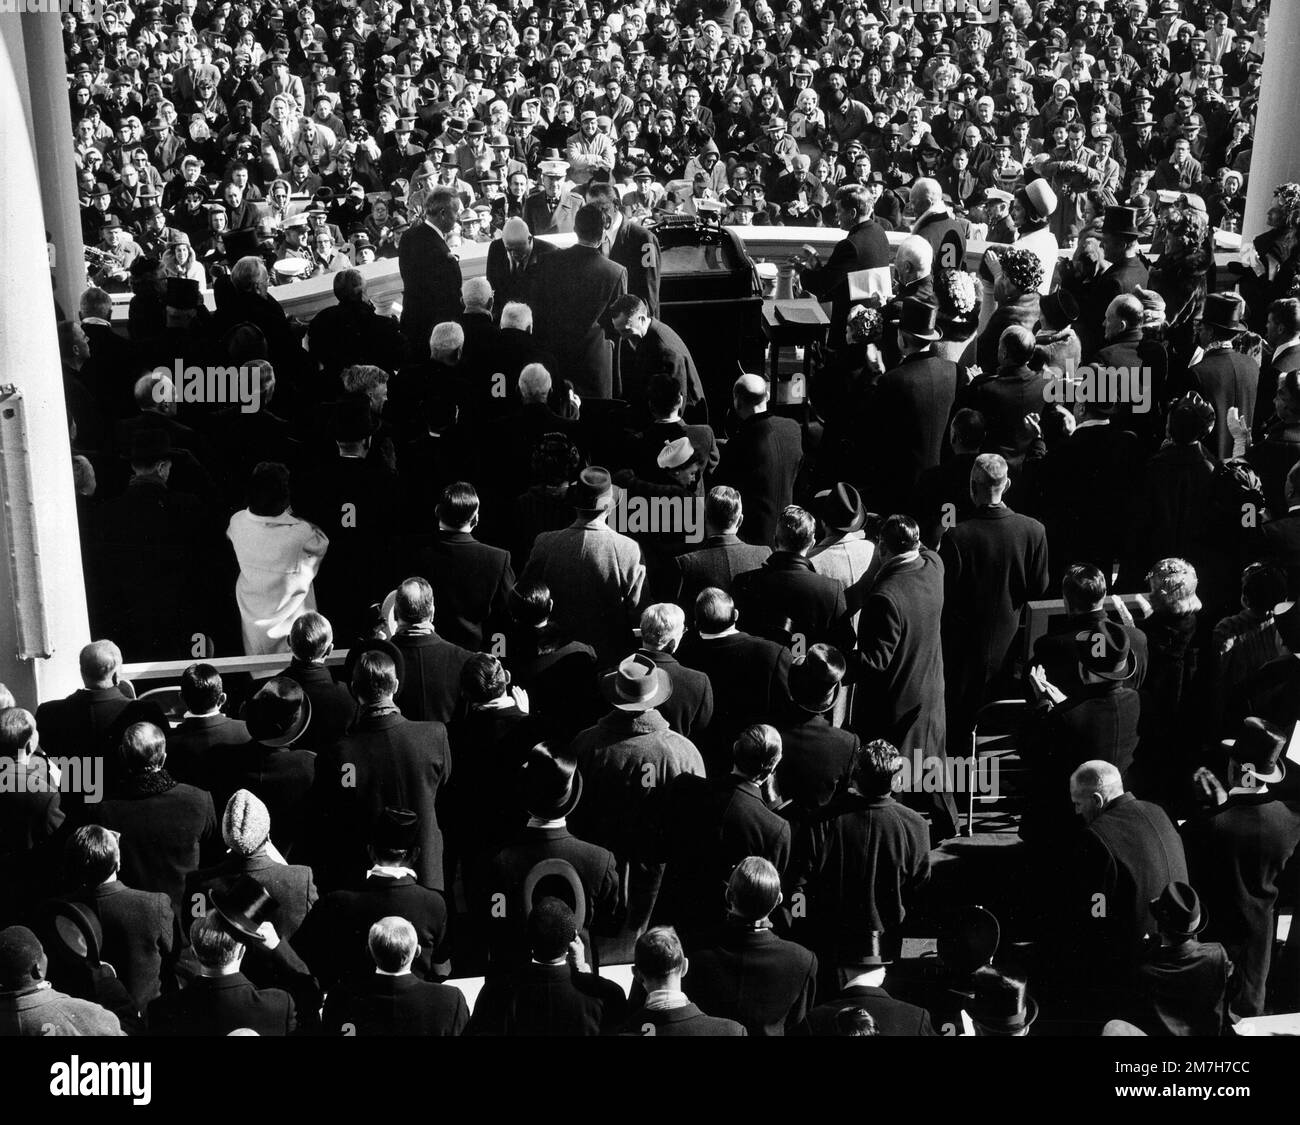 Cérémonie inaugurale des États-Unis Le président John F. Kennedy, entouré par la foule, États-Unis Bâtiment du Capitole, Washington, D.C., Etats-Unis, architecte du Capitole, 20 janvier 1961 Banque D'Images